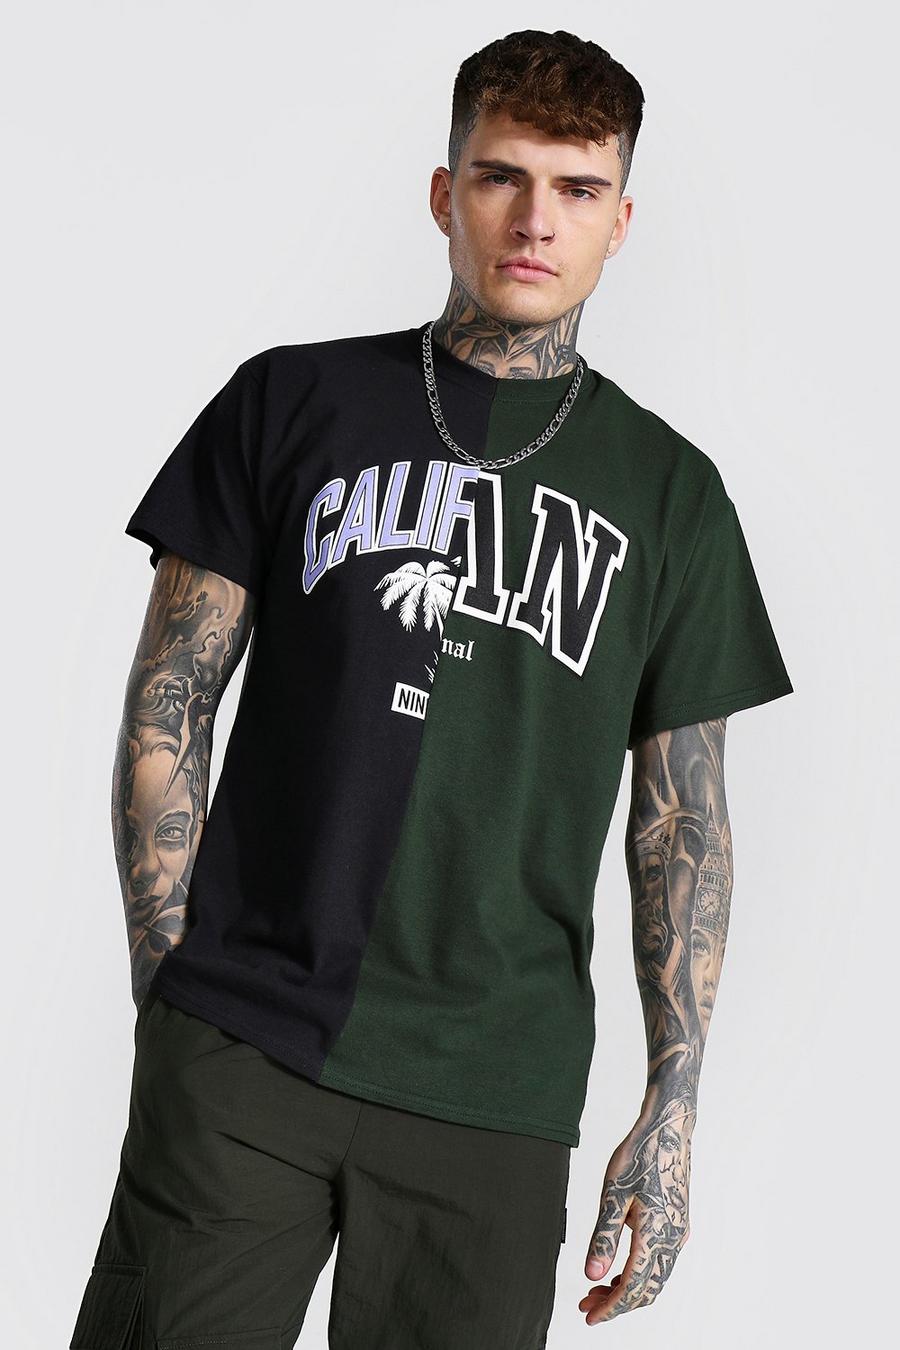 Black Oversized Cali Man Spliced T-shirt image number 1